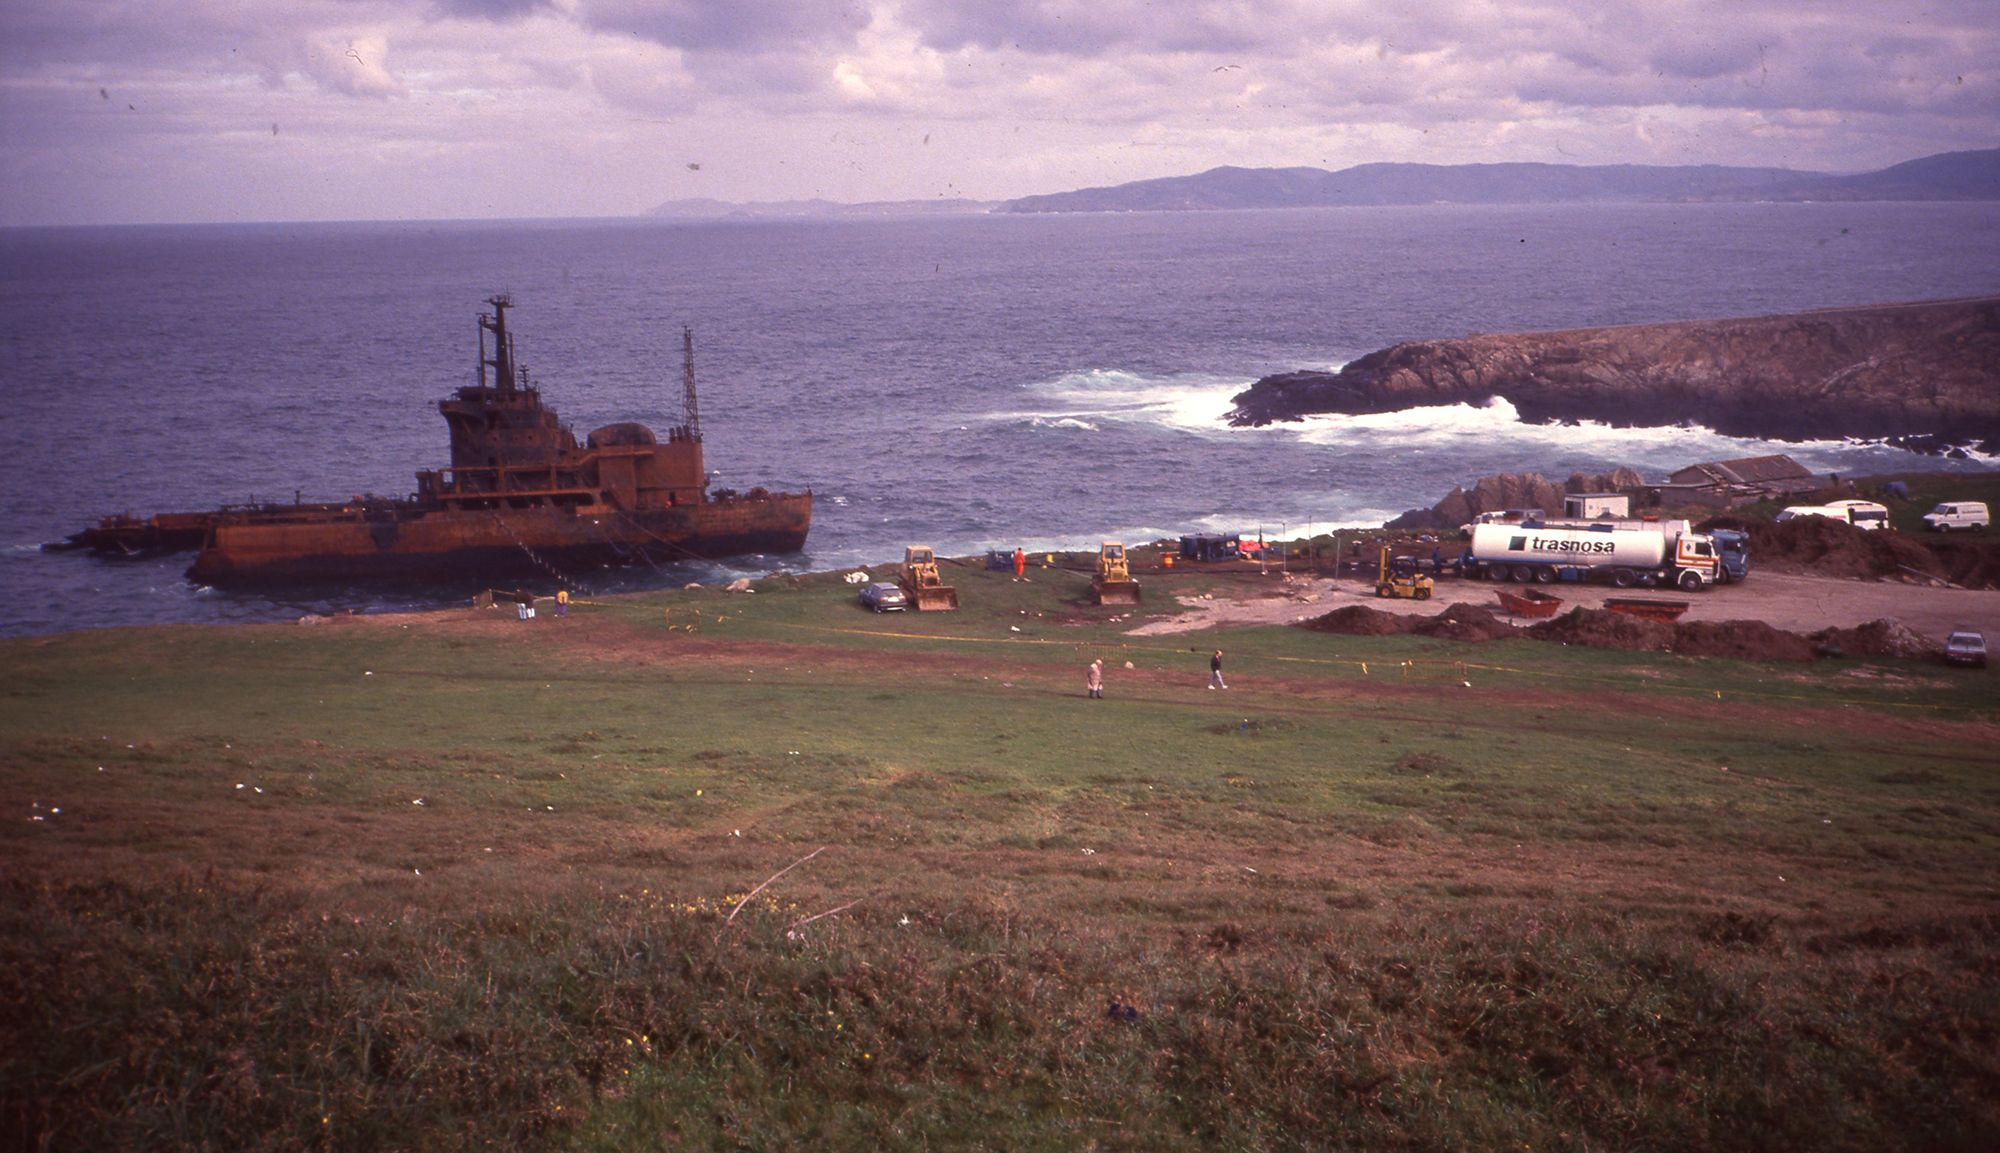 El petrolero Mar Egeo que llevaba 80000 toneladas de petroleo a la refinería de A Coruña embarrancó junto a la torre de Hércules partiéndose en dos y provocando una gran marea negra 1992 Magar (7).jpg